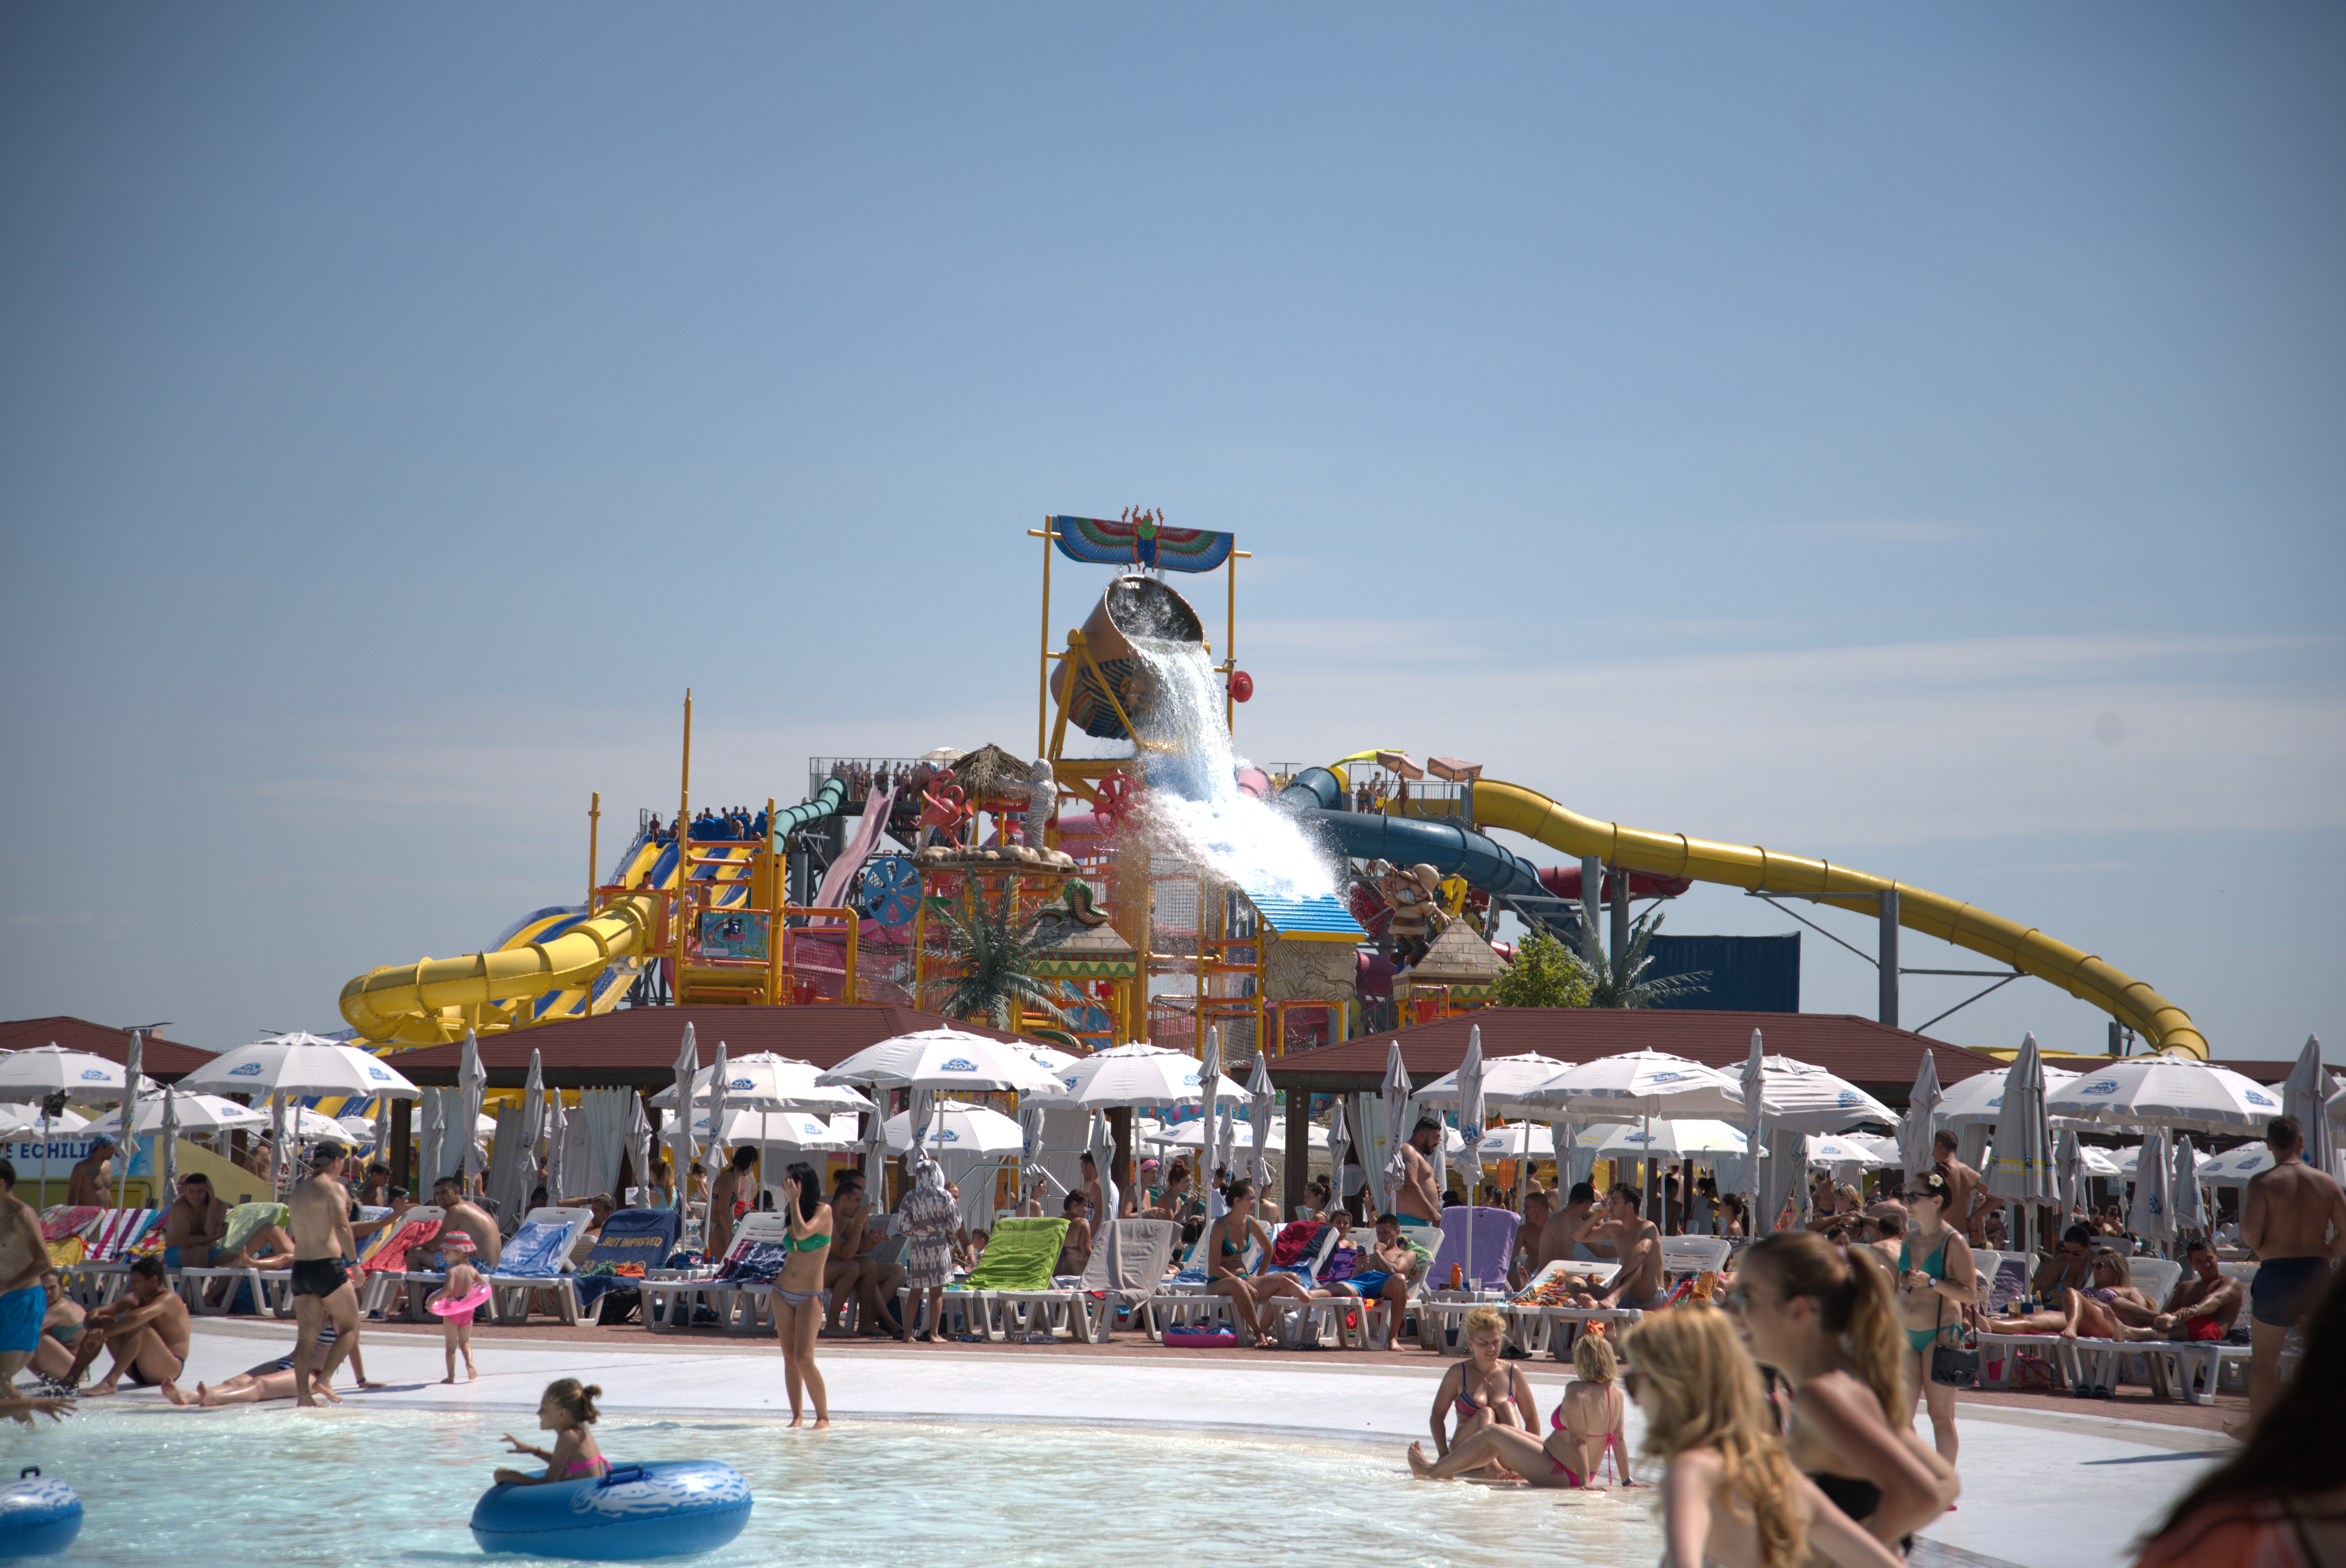 Pe 15 iunie, Divertiland Water Park dă startul verii! Numărul vizitatorilor per sezon ajunge la 150.000 de persoane